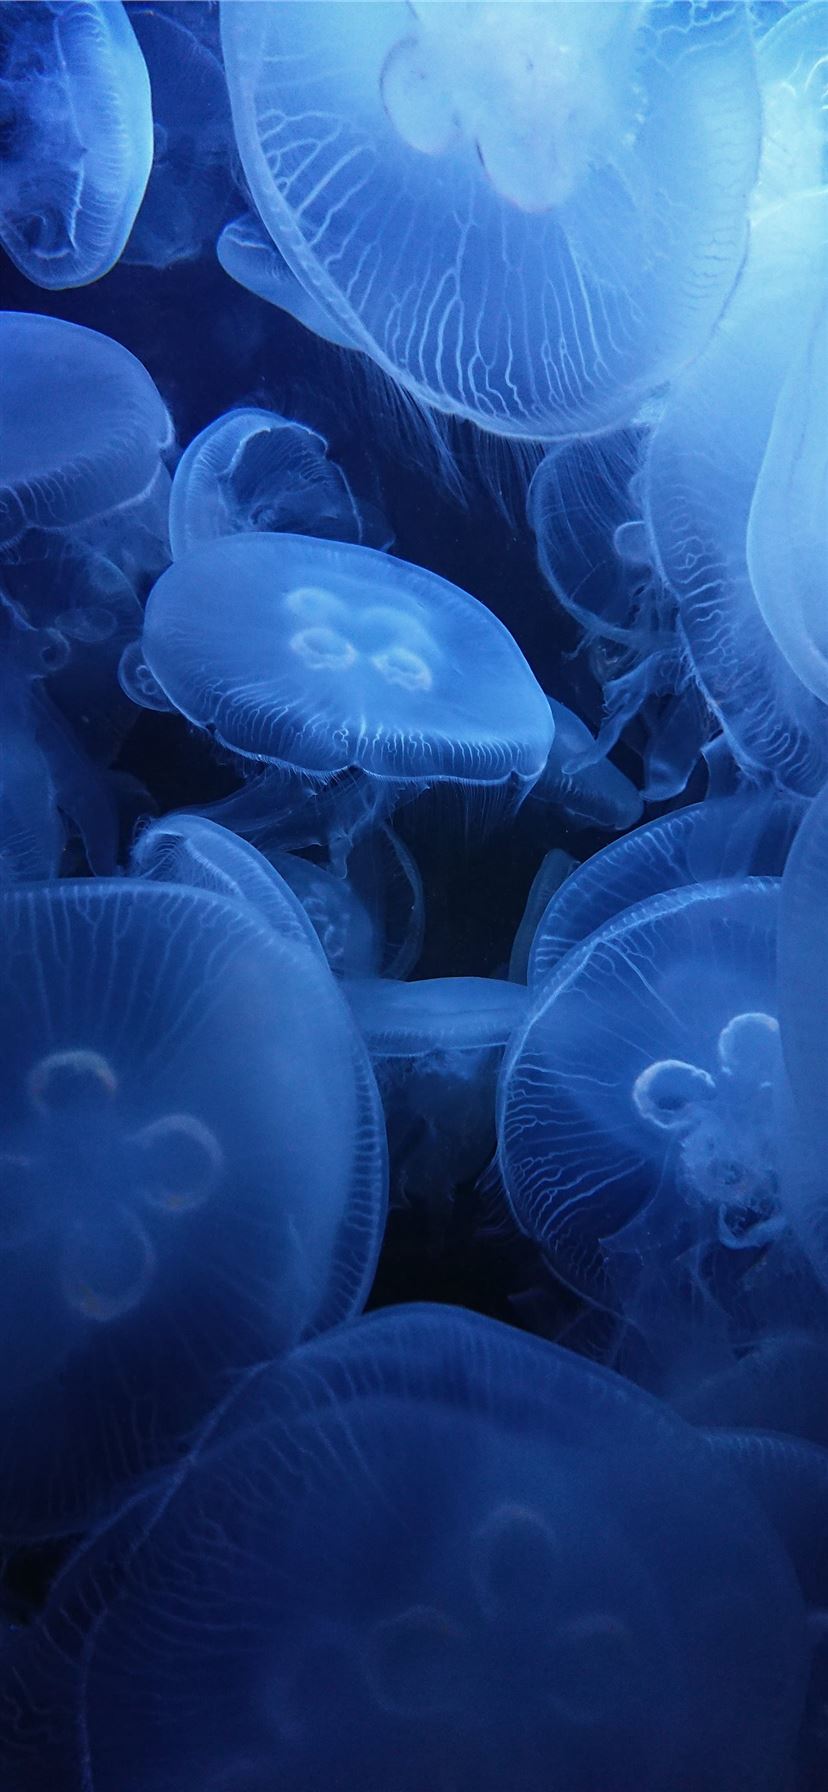 Jellyfish Wallpaper Images  Free Download on Freepik